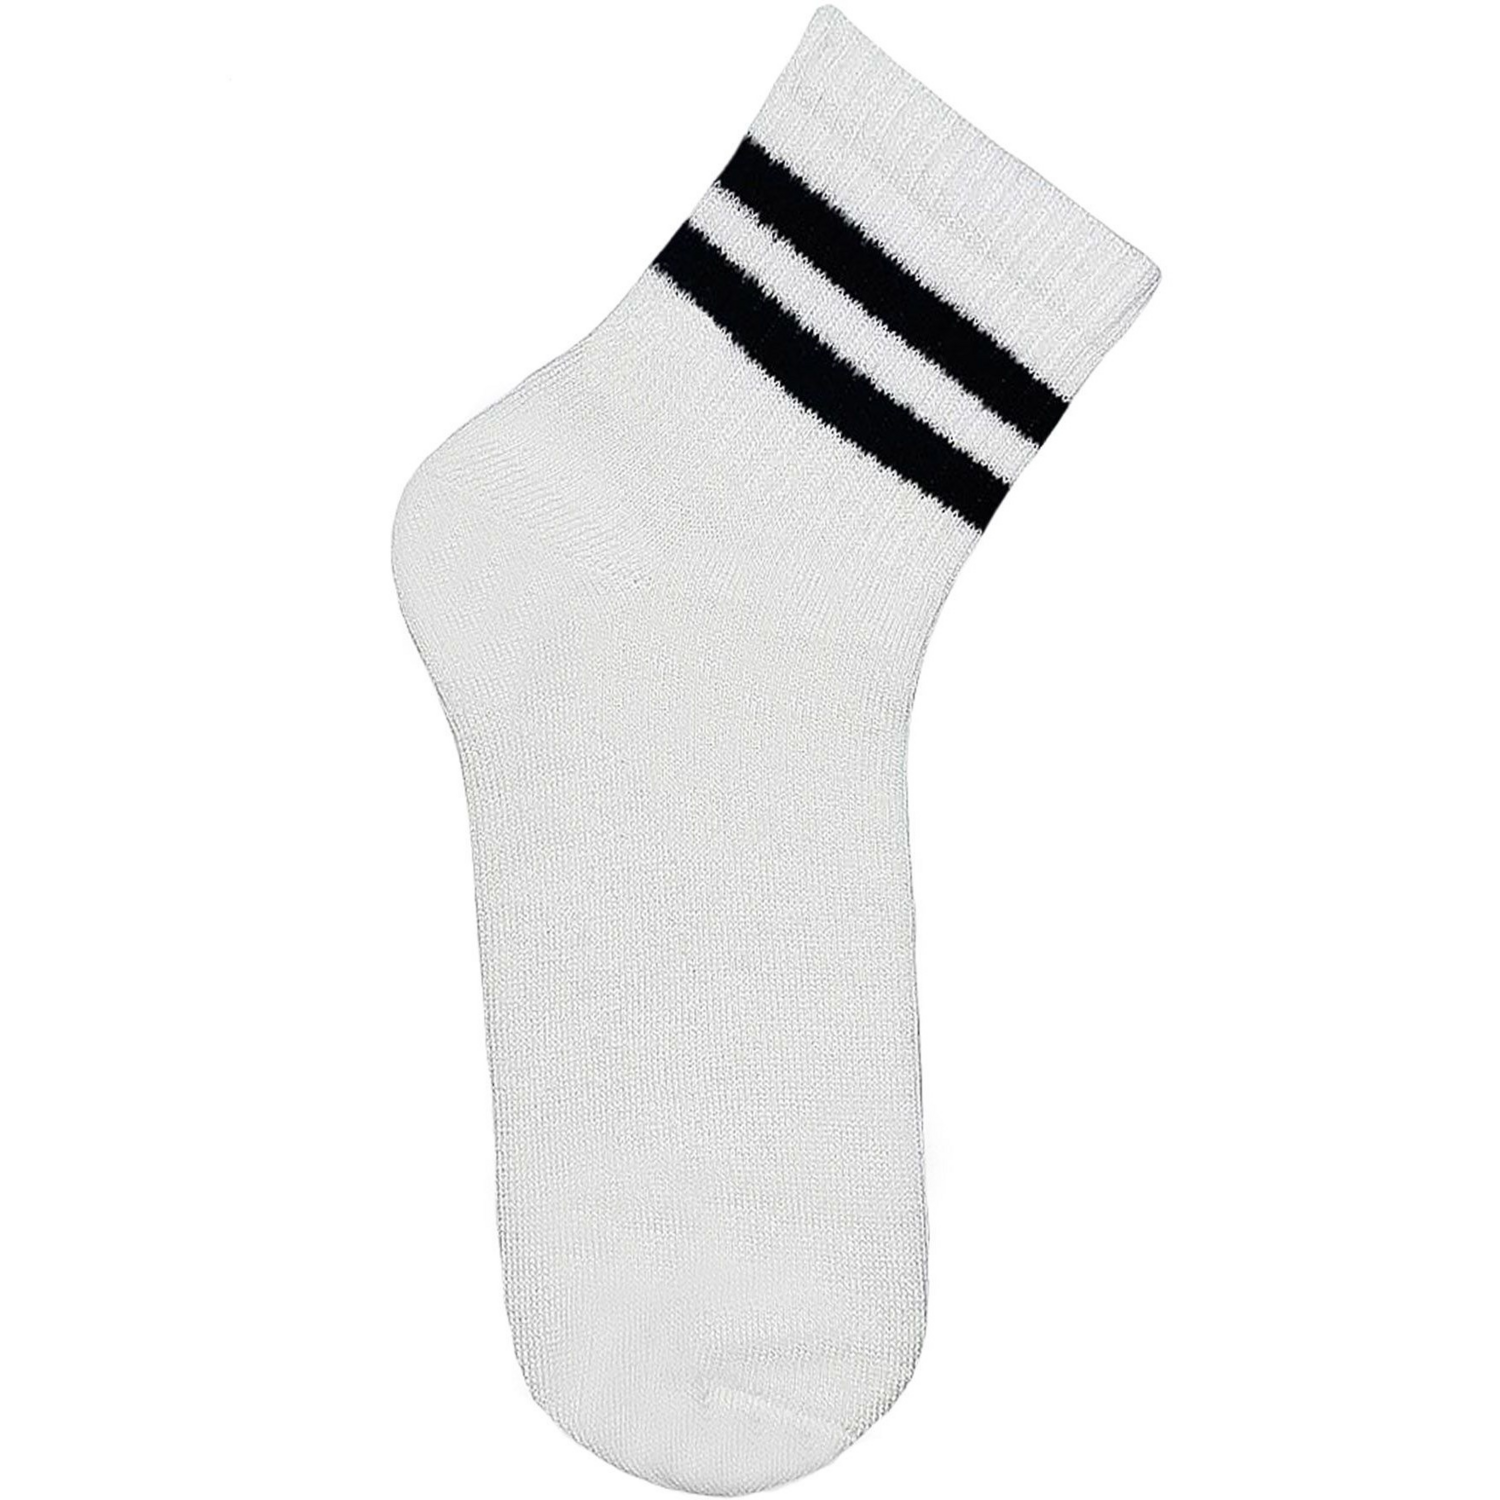 Носки детские Premier Socks 22-24 1 пара белые с черными полосками (4820163320083) фото 